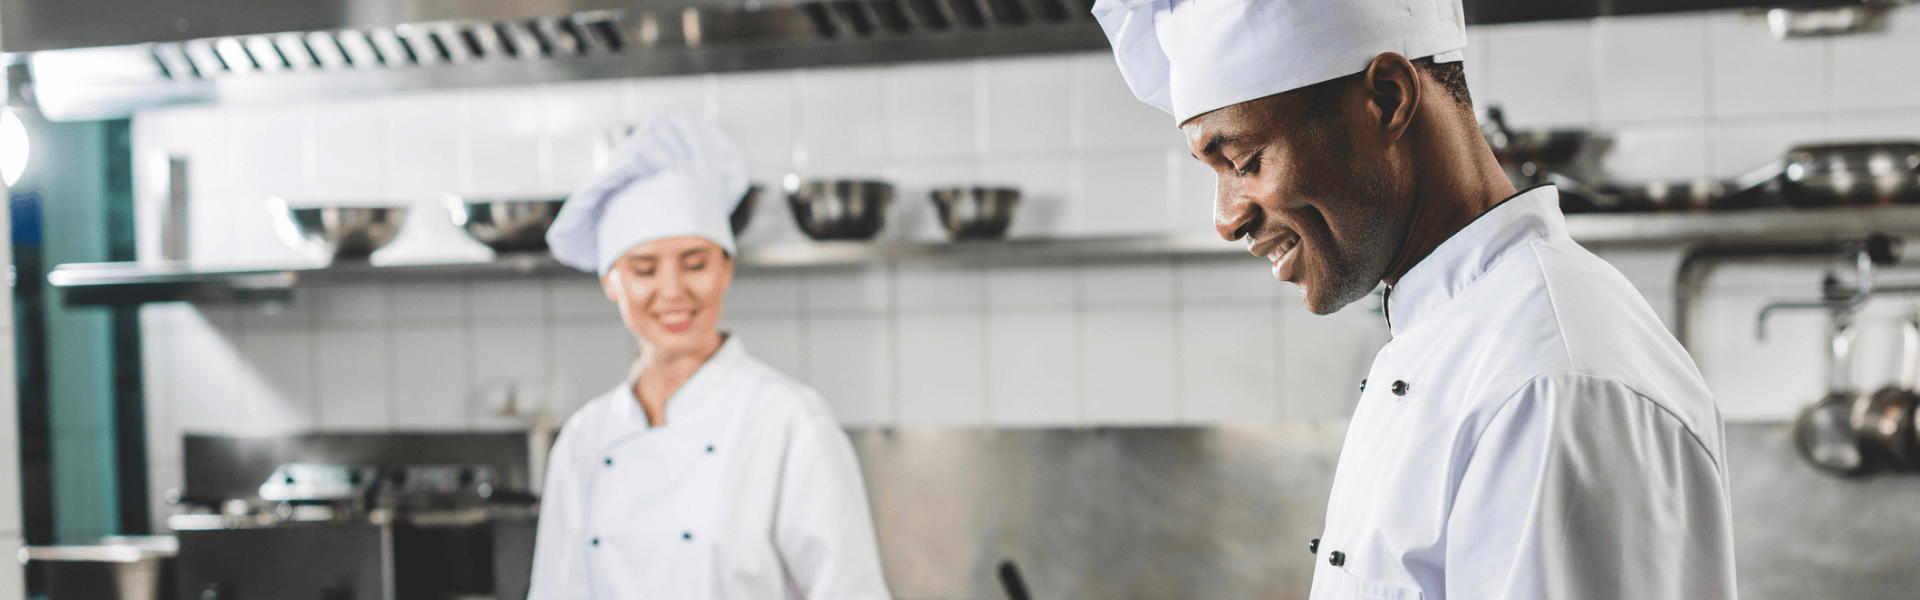 Restaurante Popular de Florianópolis abre contratação de profissionais